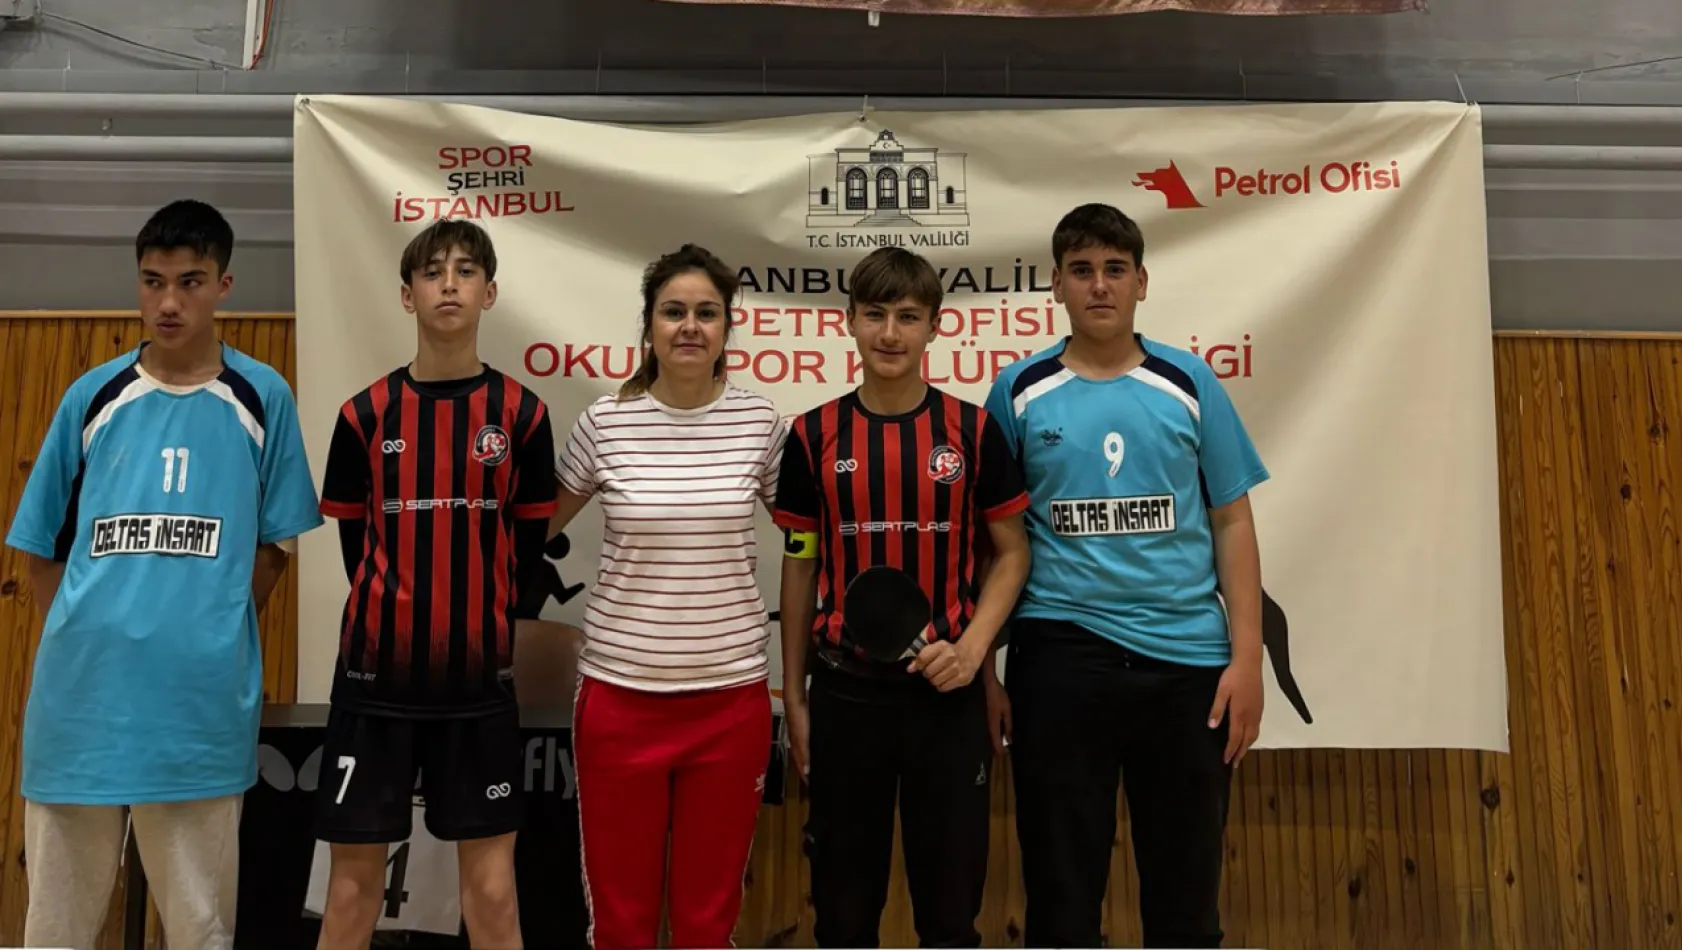 Büyük Kılıçlı Ortaokulu Öğrencilerinden İstanbul Yıldız Erkekler Kategorisinde Büyük Başarı